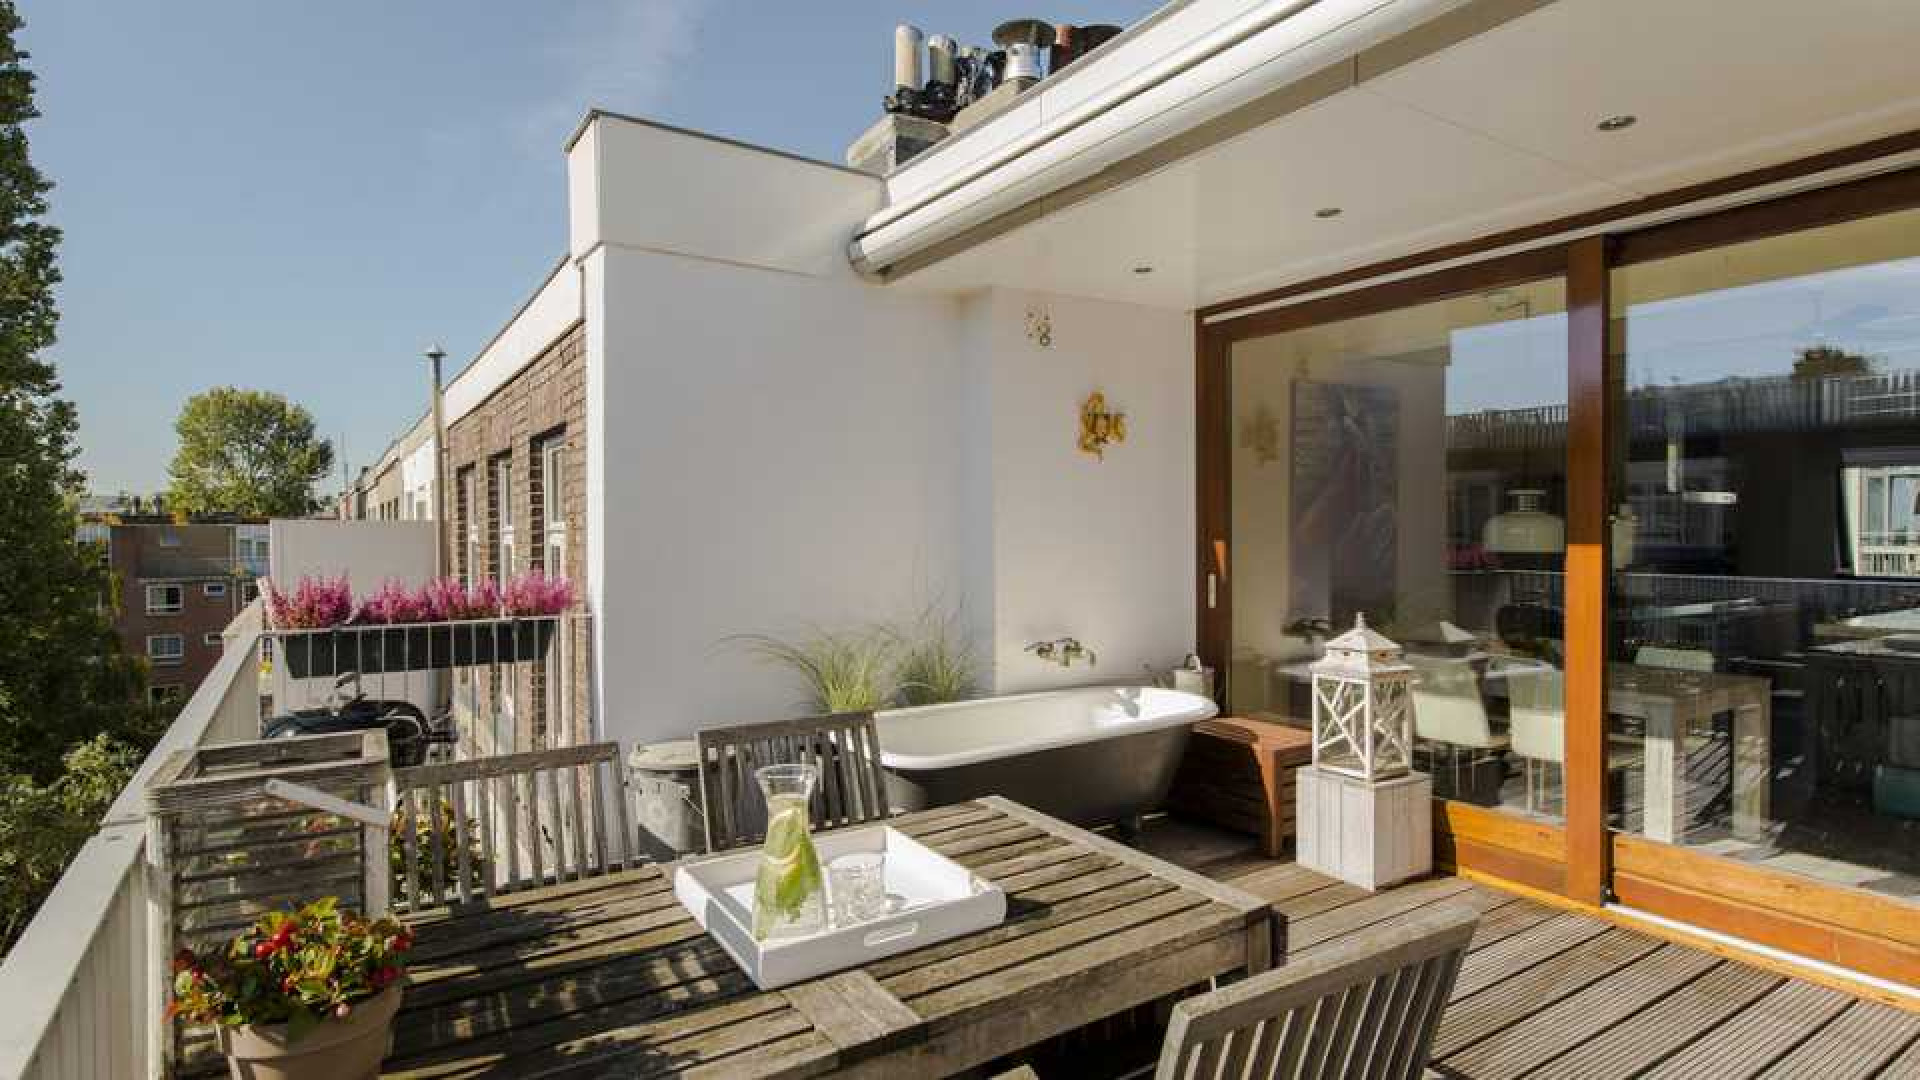 Armin van Buuren koopt luxe dubbel bovenhuis in Amsterdam Oud-West. Zie foto's 4